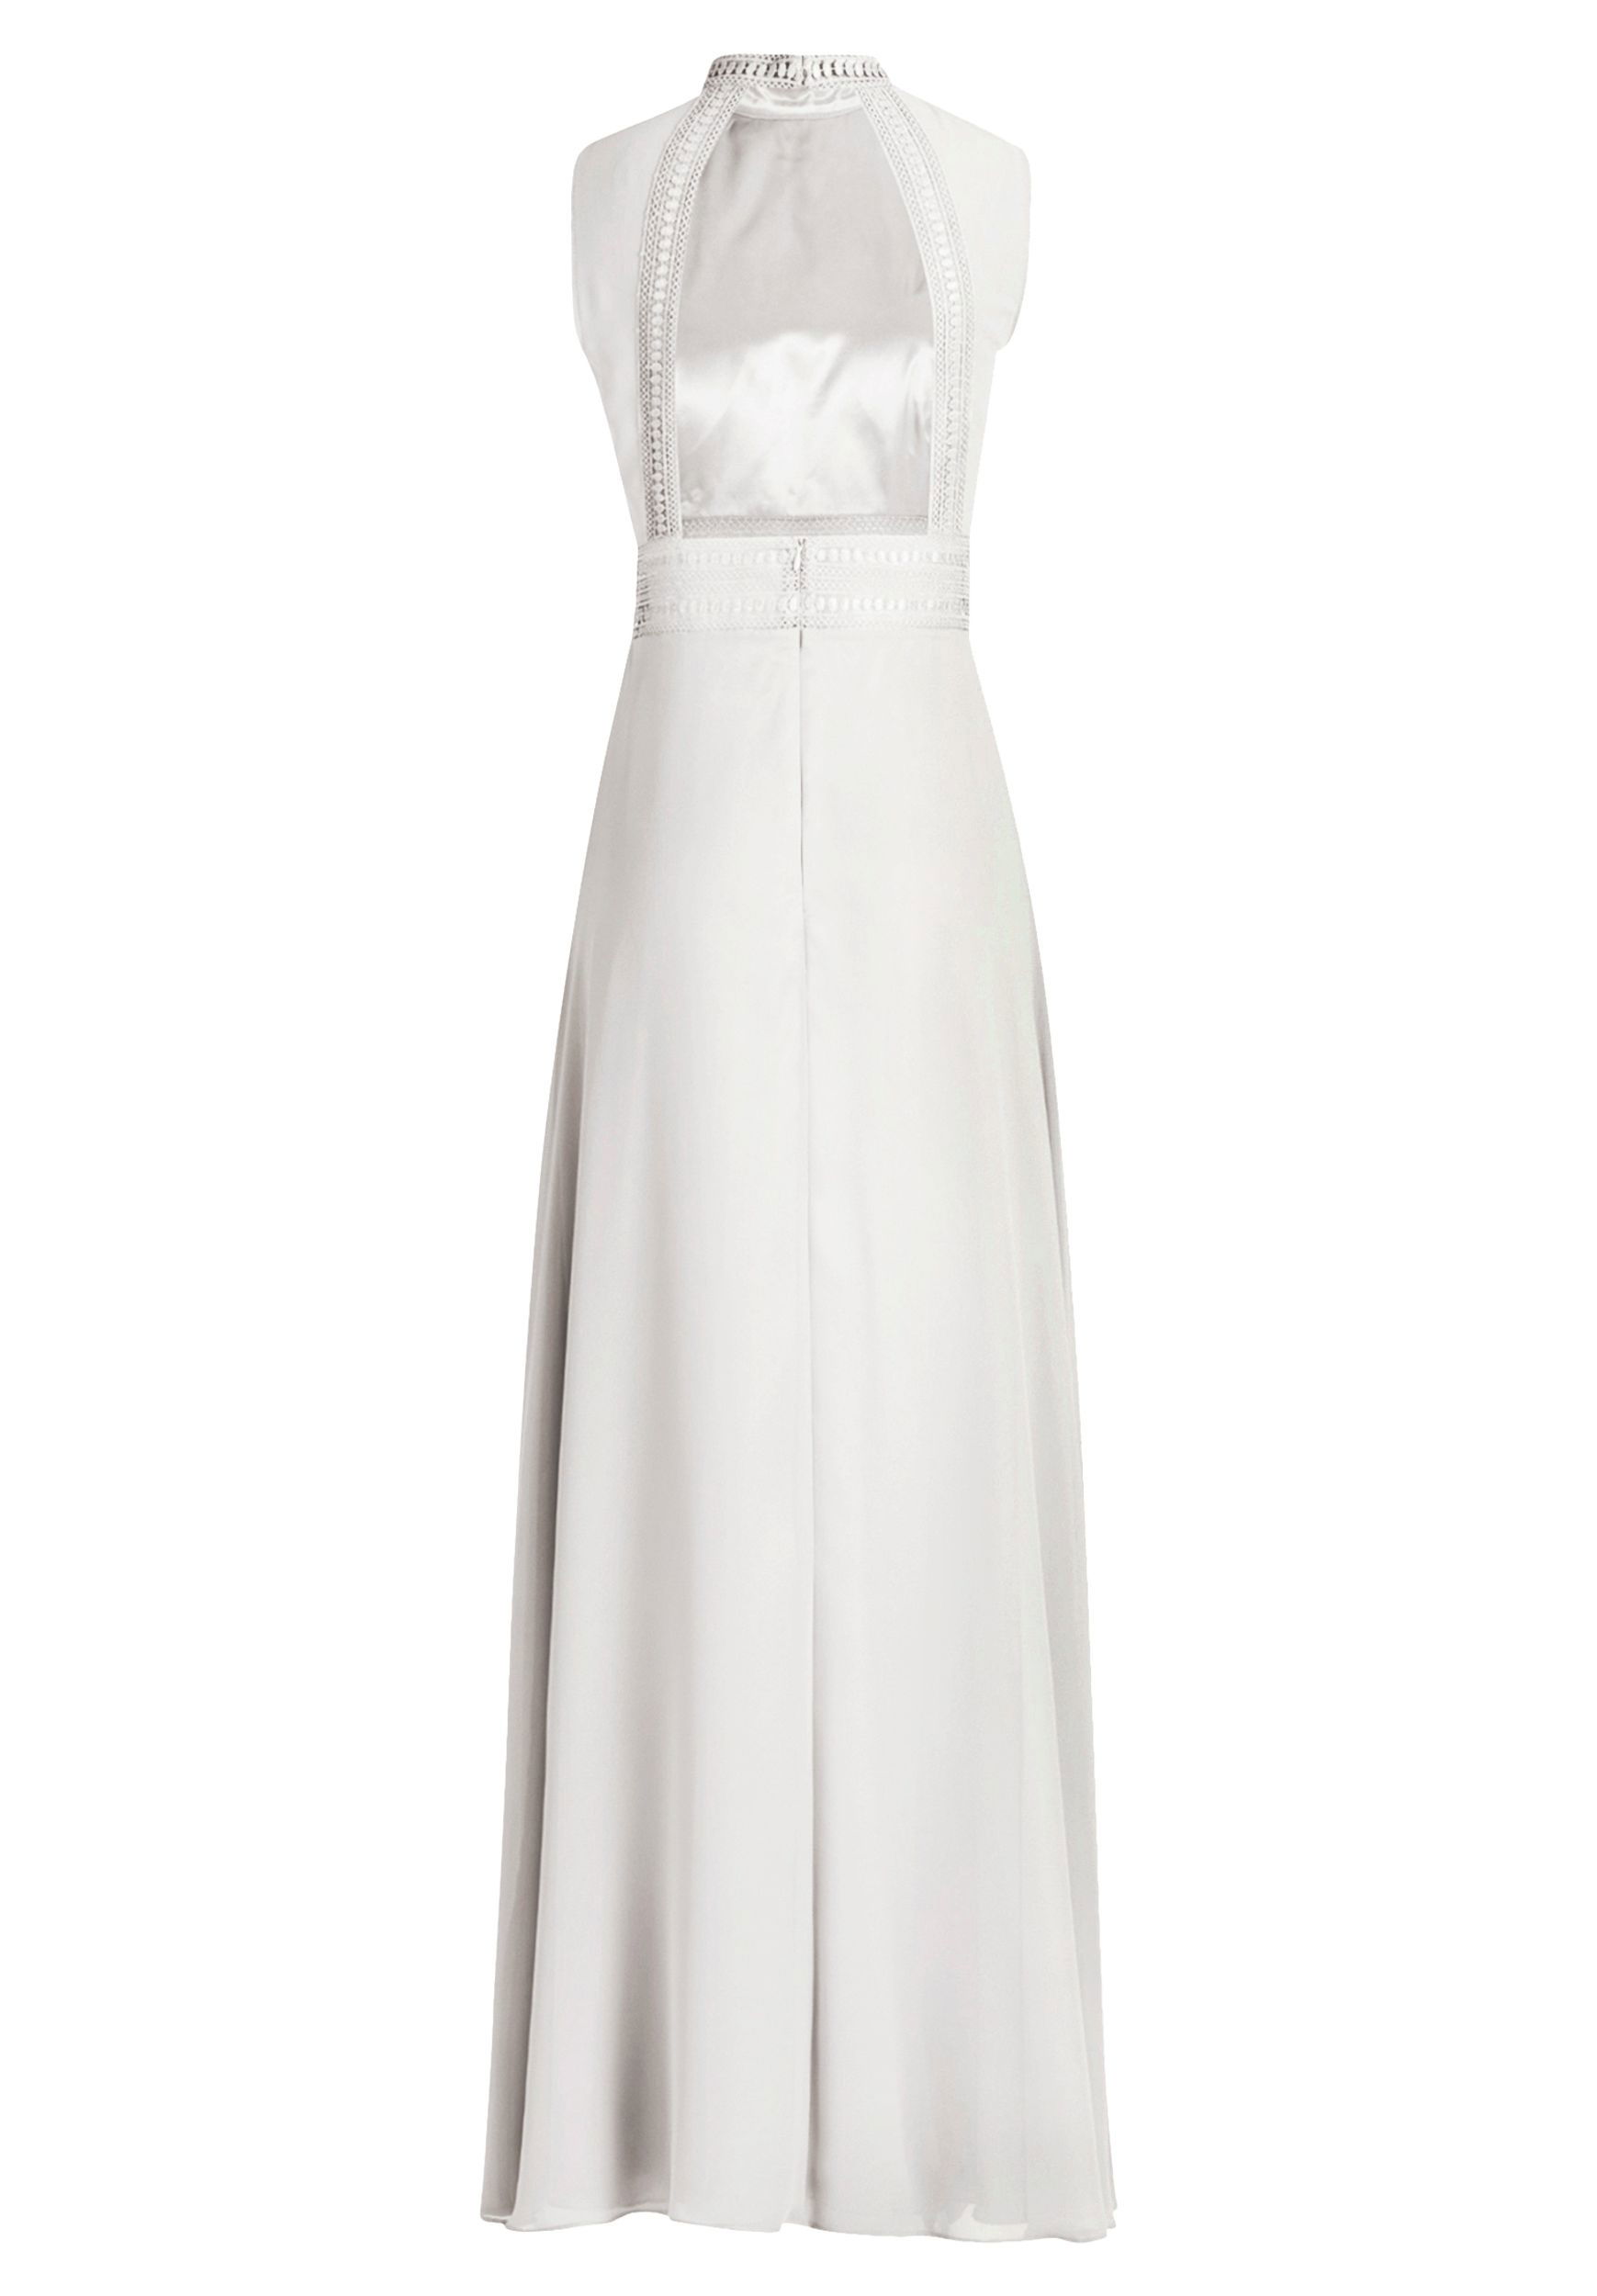 VM by Vera Mont |  VM by Vera Mont Langes Kleid  | 38 | ivory white